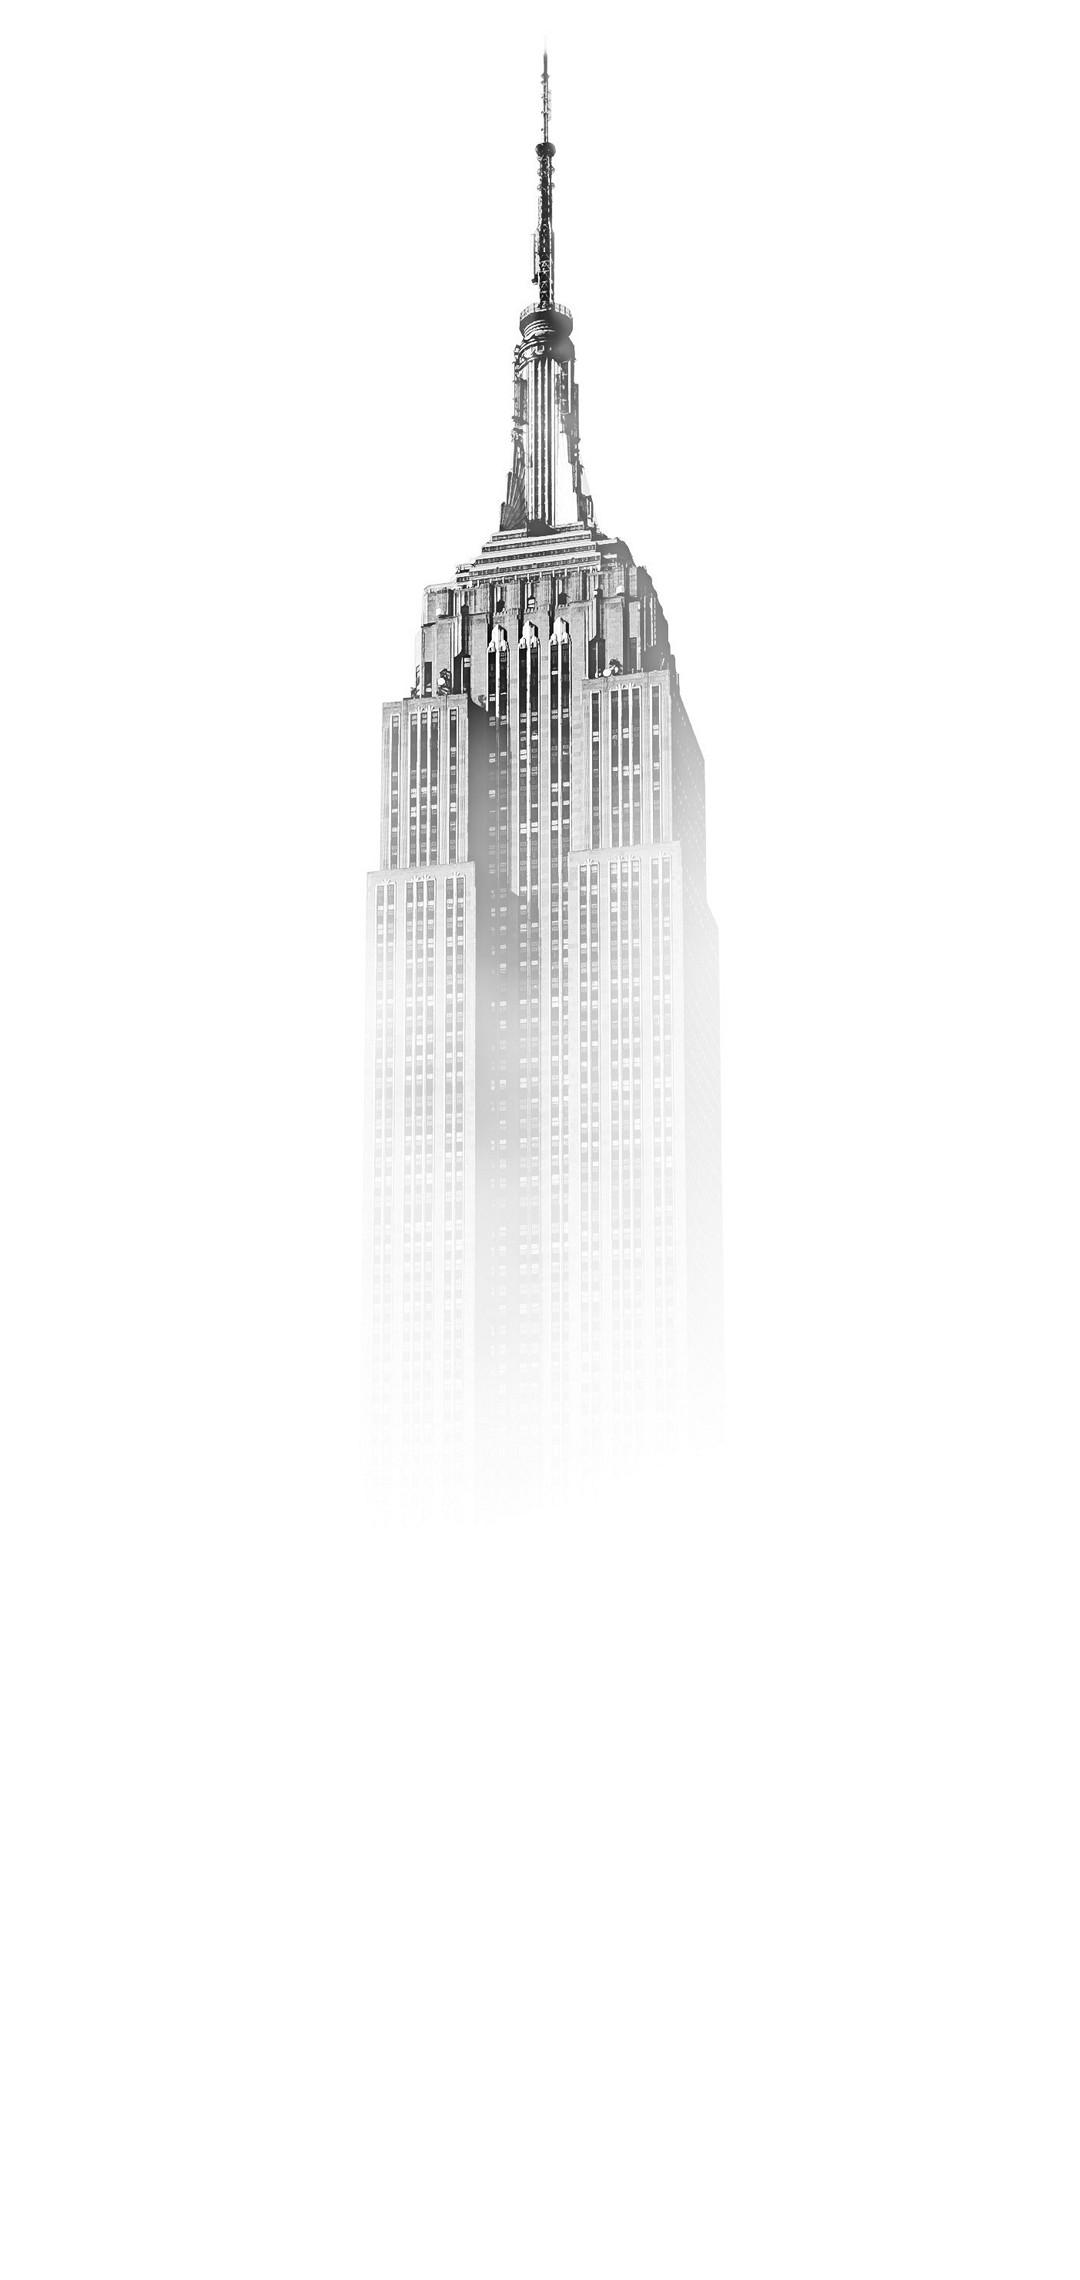 ニューヨーク マンハッタン エンパイア ステート ビルディング Aquos Sense4 Lite Androidスマホ壁紙 待ち受け スマラン